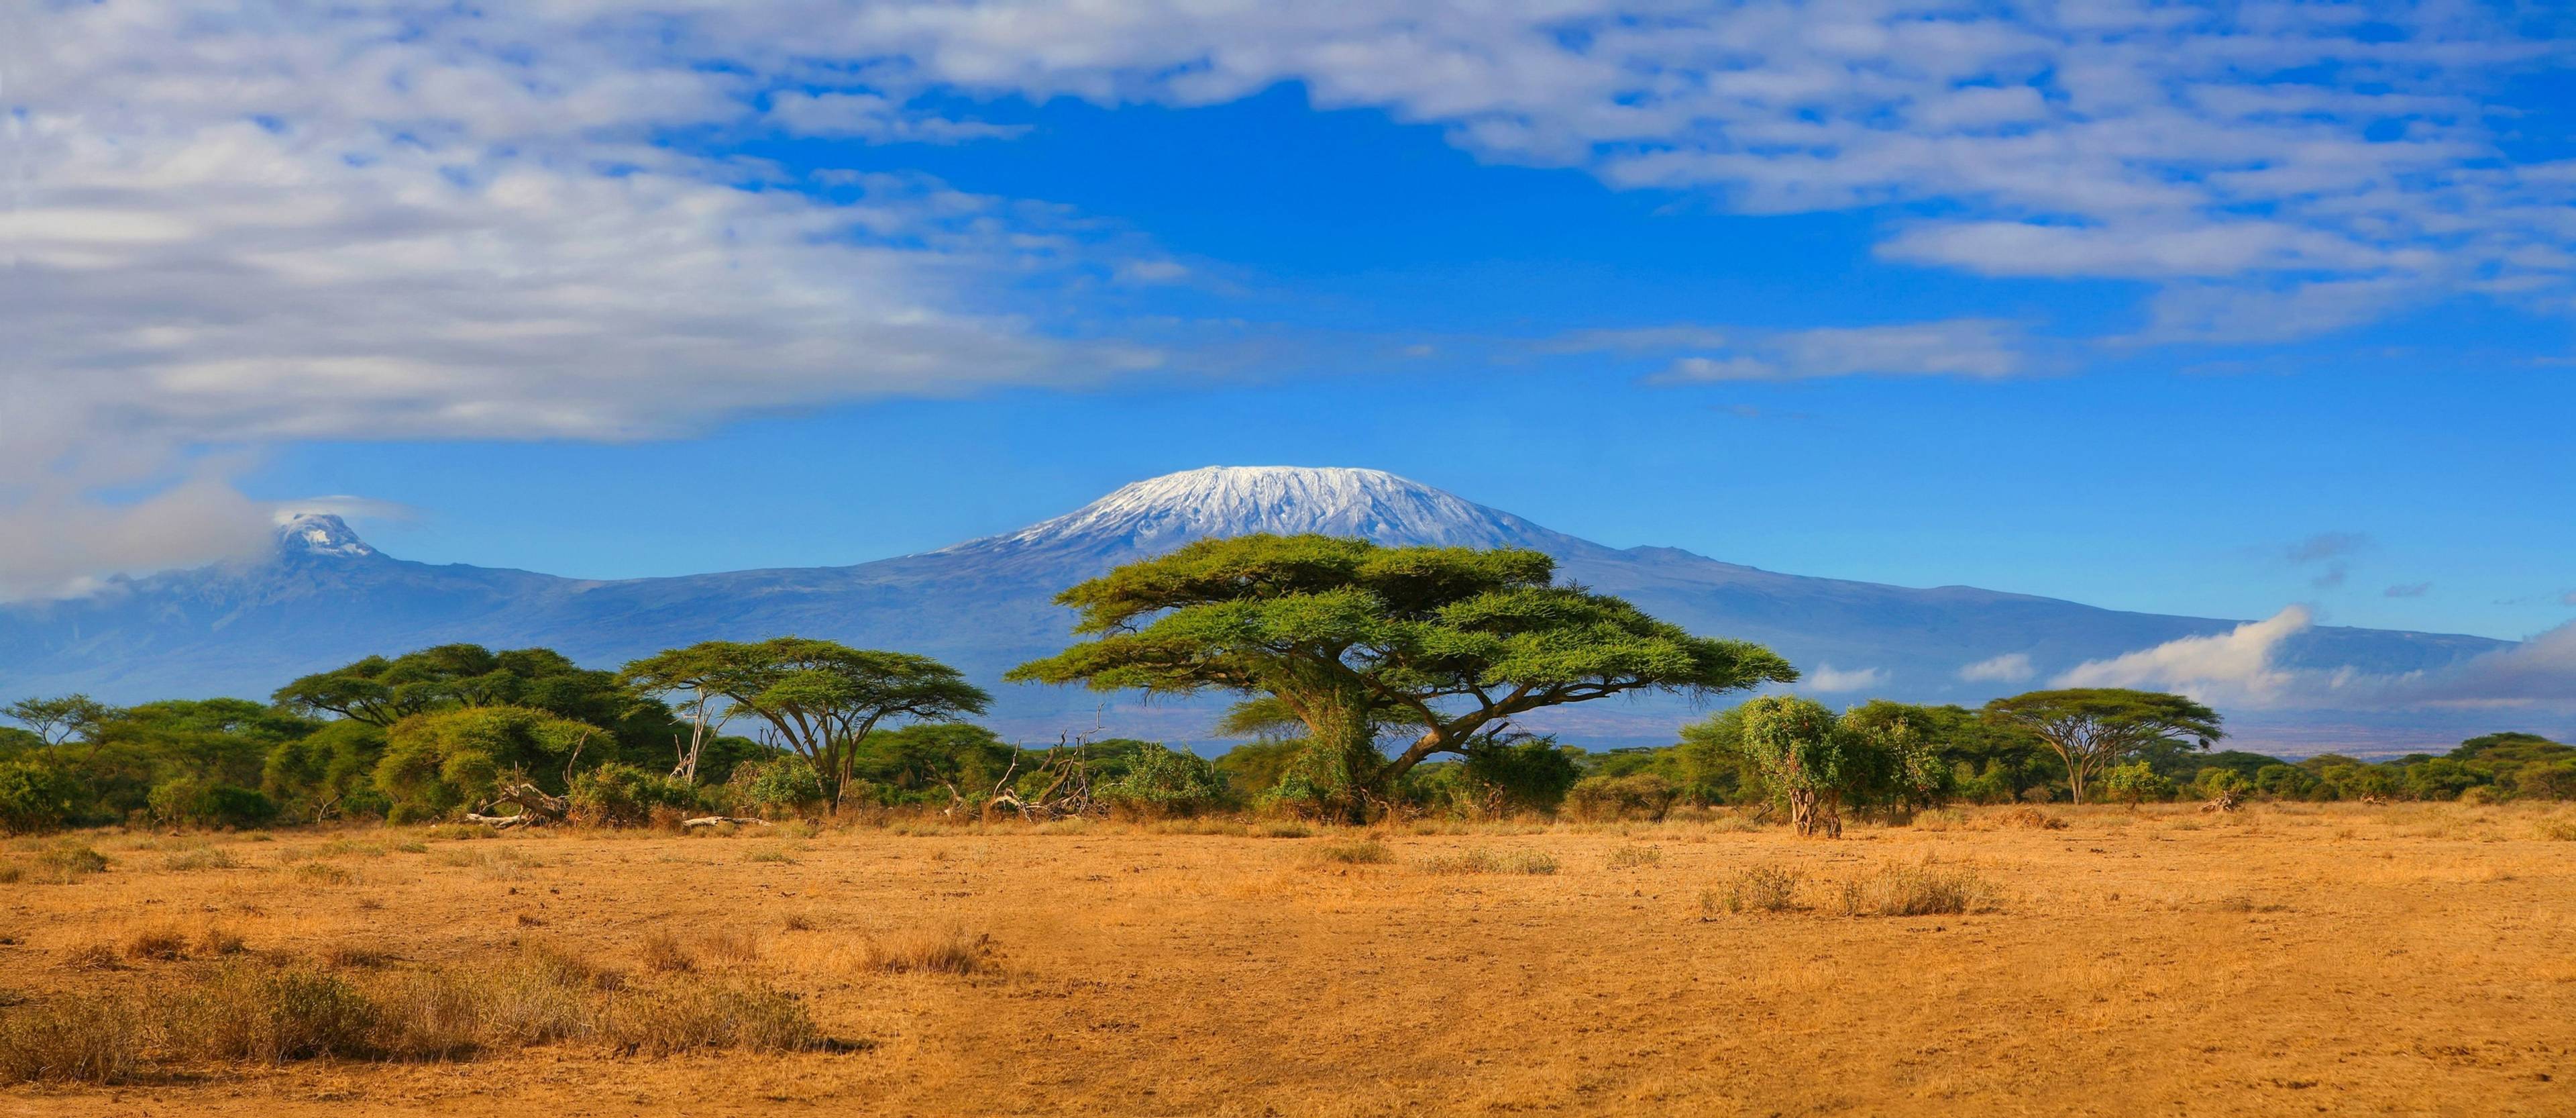 savana in tanzania con kilimangiaro innevato